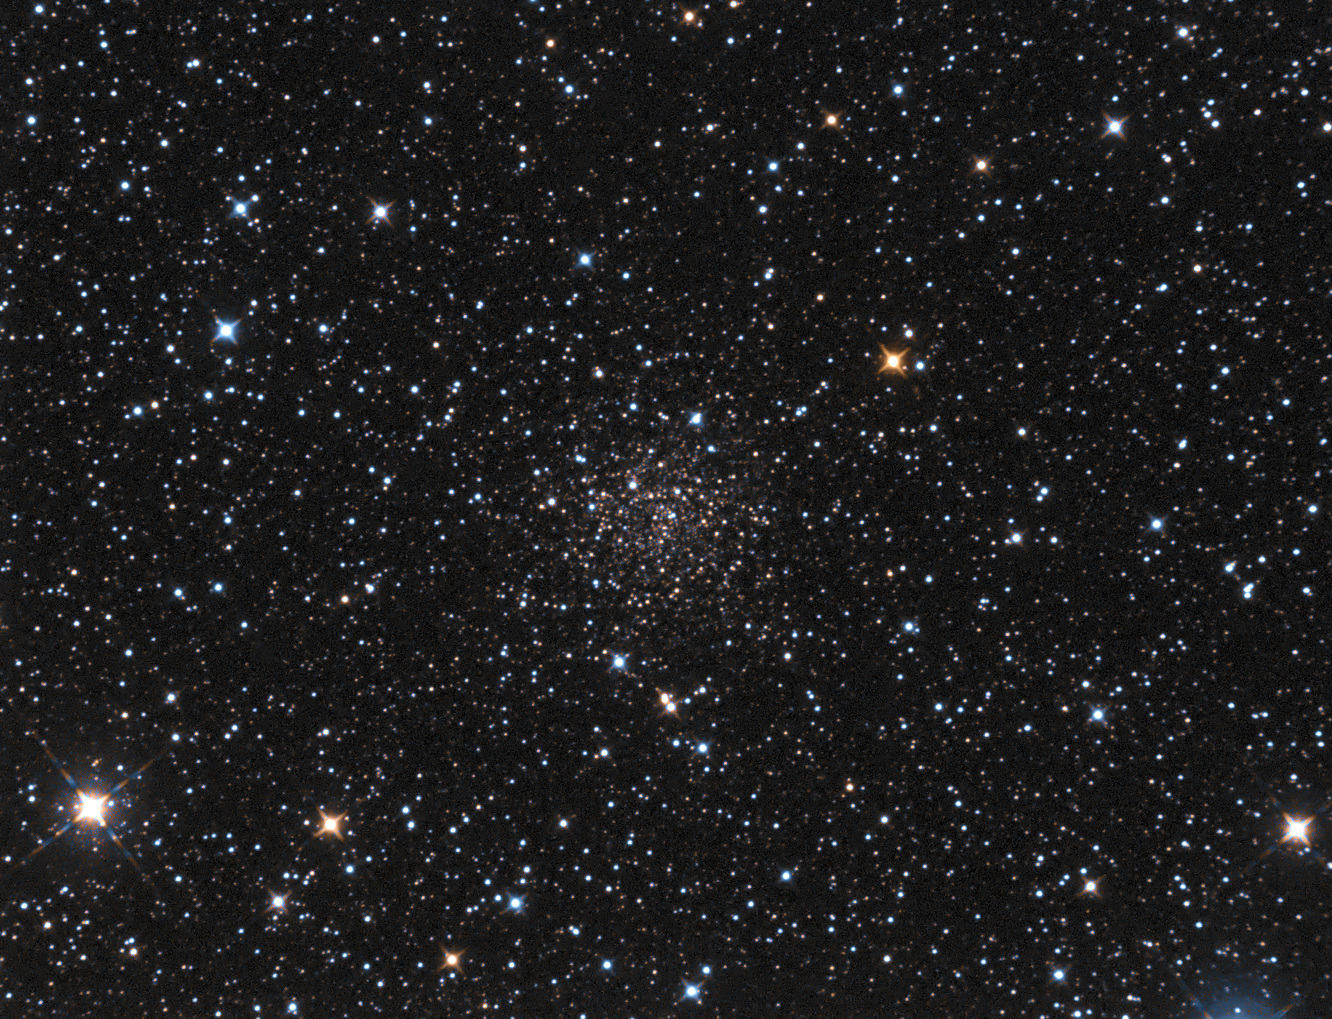 NGC-6791_W12-15x120s-b1_R-16x240s-b1_G-10x240s-b1_CBG-CSC-SC_ST-15-3-2.5_SA-35-15_G-97_v3.jpg